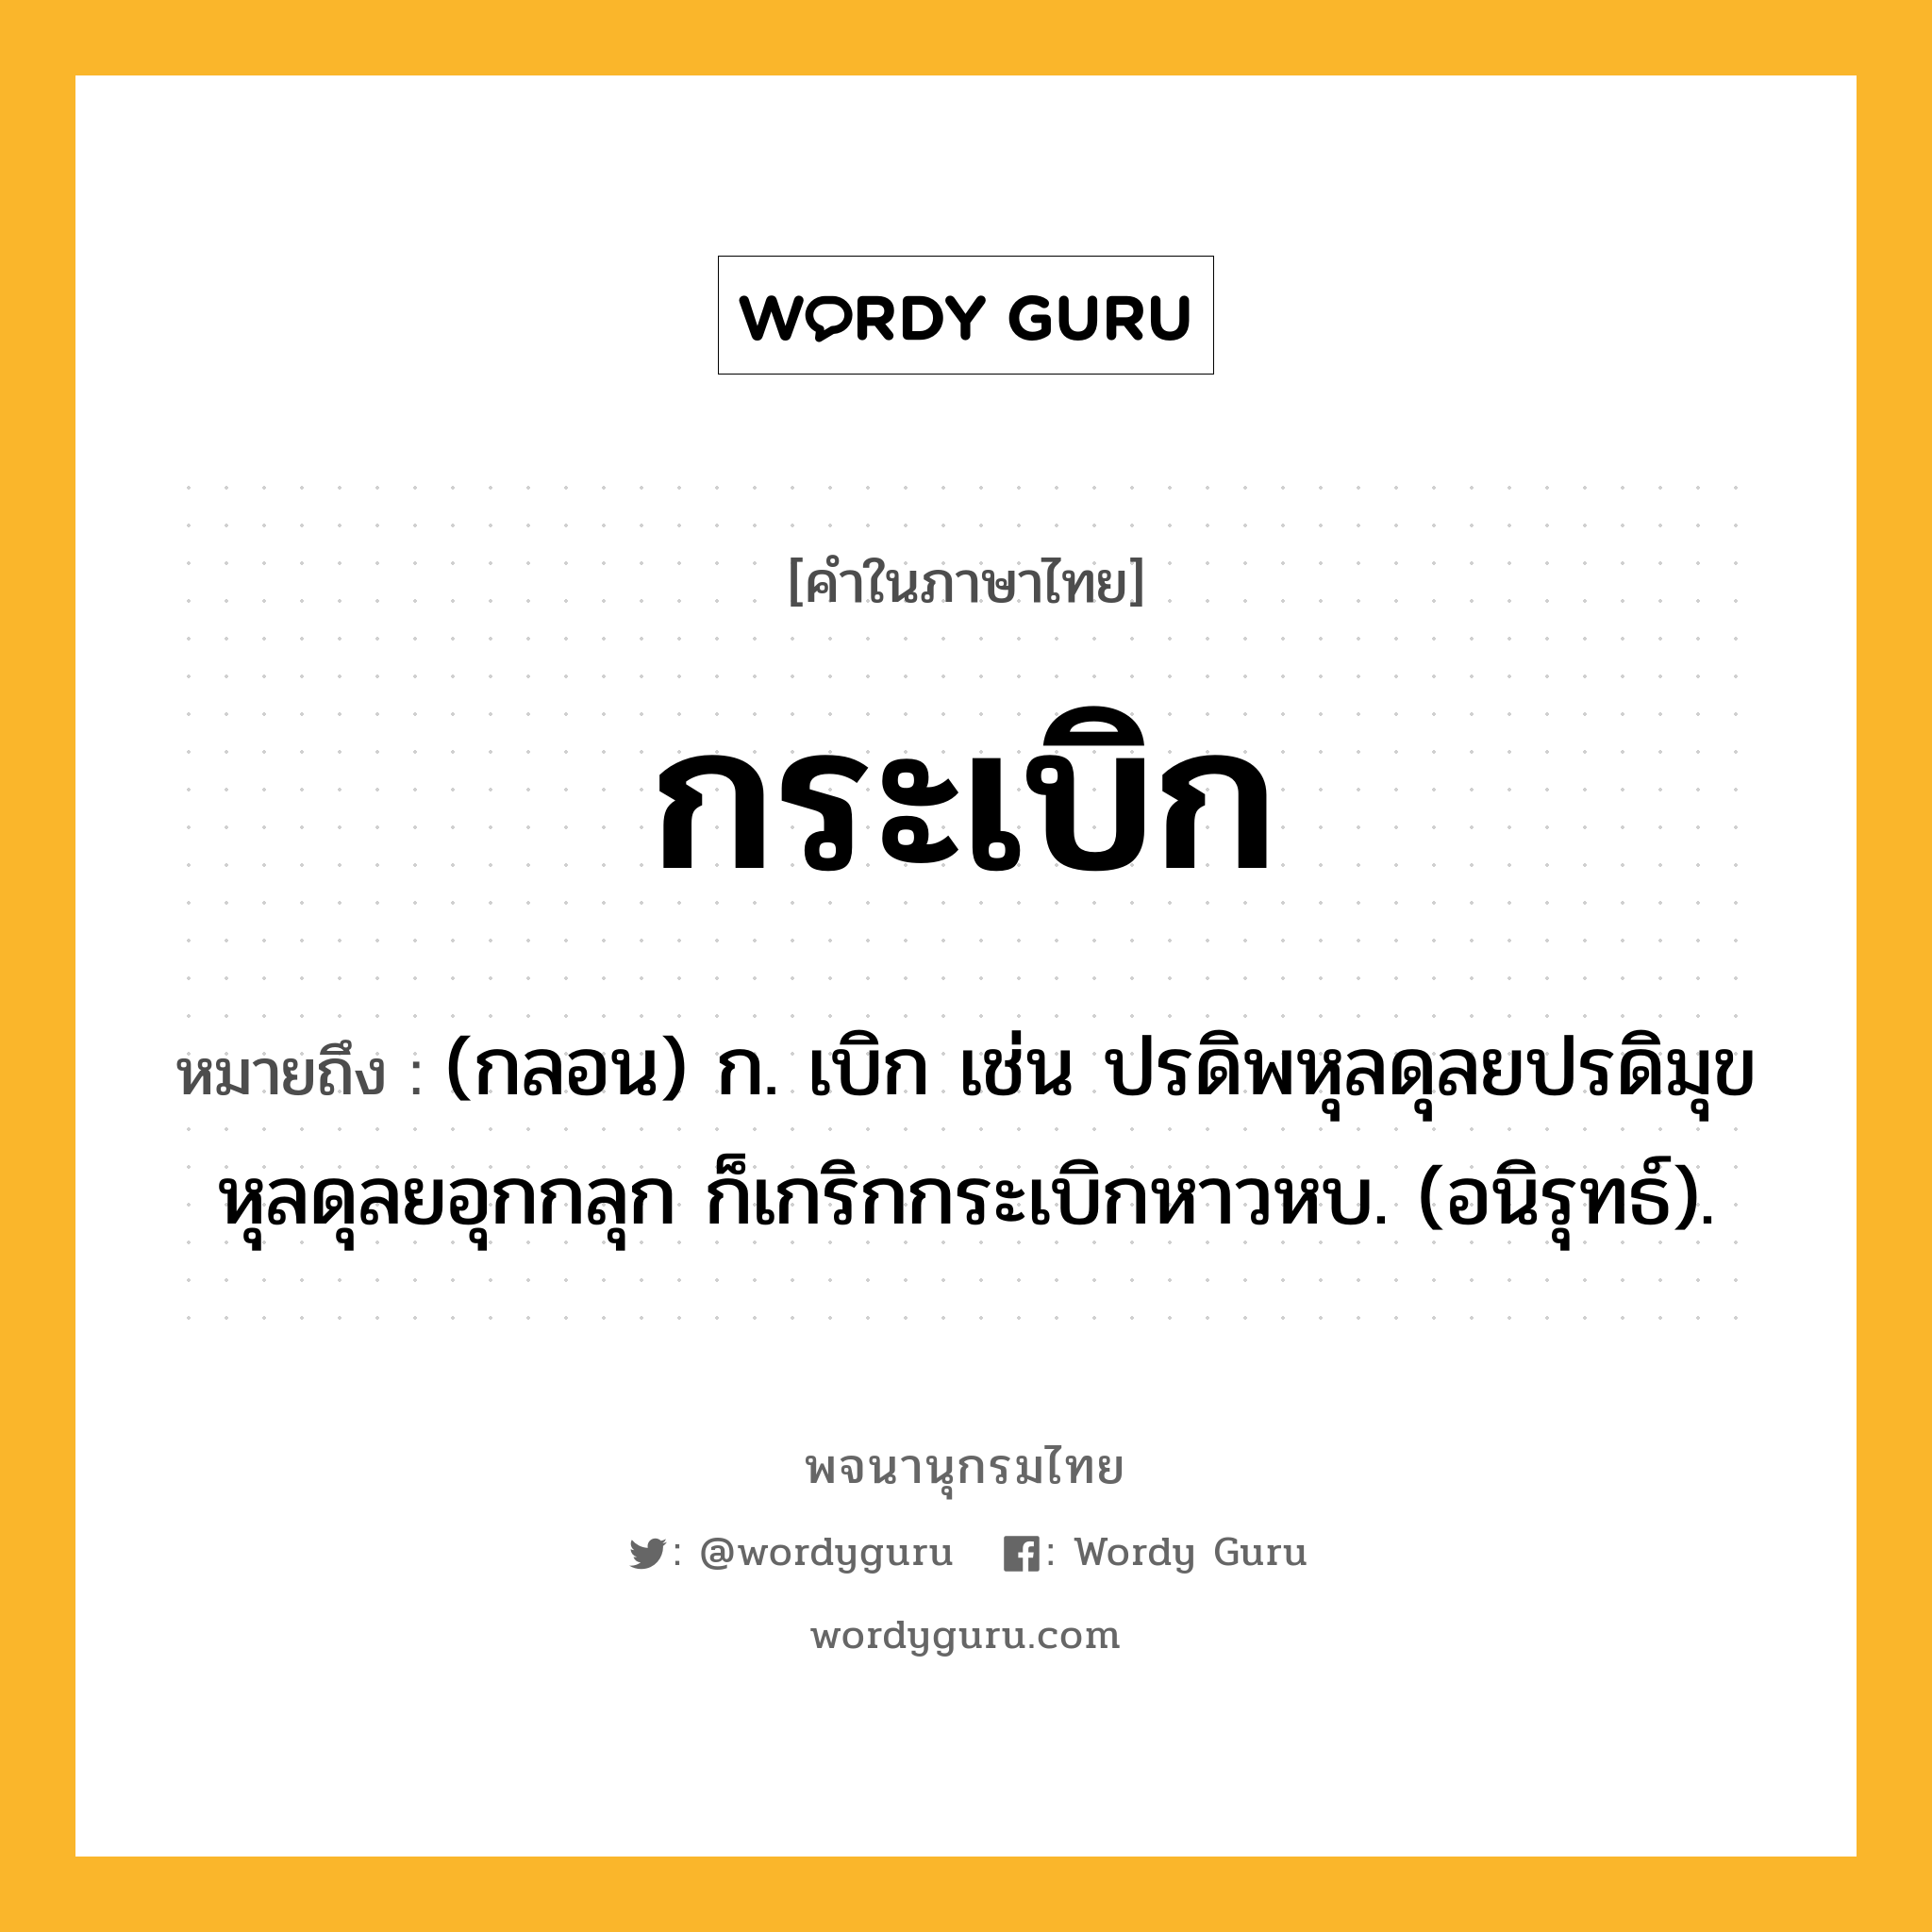 กระเบิก หมายถึงอะไร?, คำในภาษาไทย กระเบิก หมายถึง (กลอน) ก. เบิก เช่น ปรดิพหุลดุลยปรดิมุข หุลดุลยอุกกลุก ก็เกริกกระเบิกหาวหบ. (อนิรุทธ์).